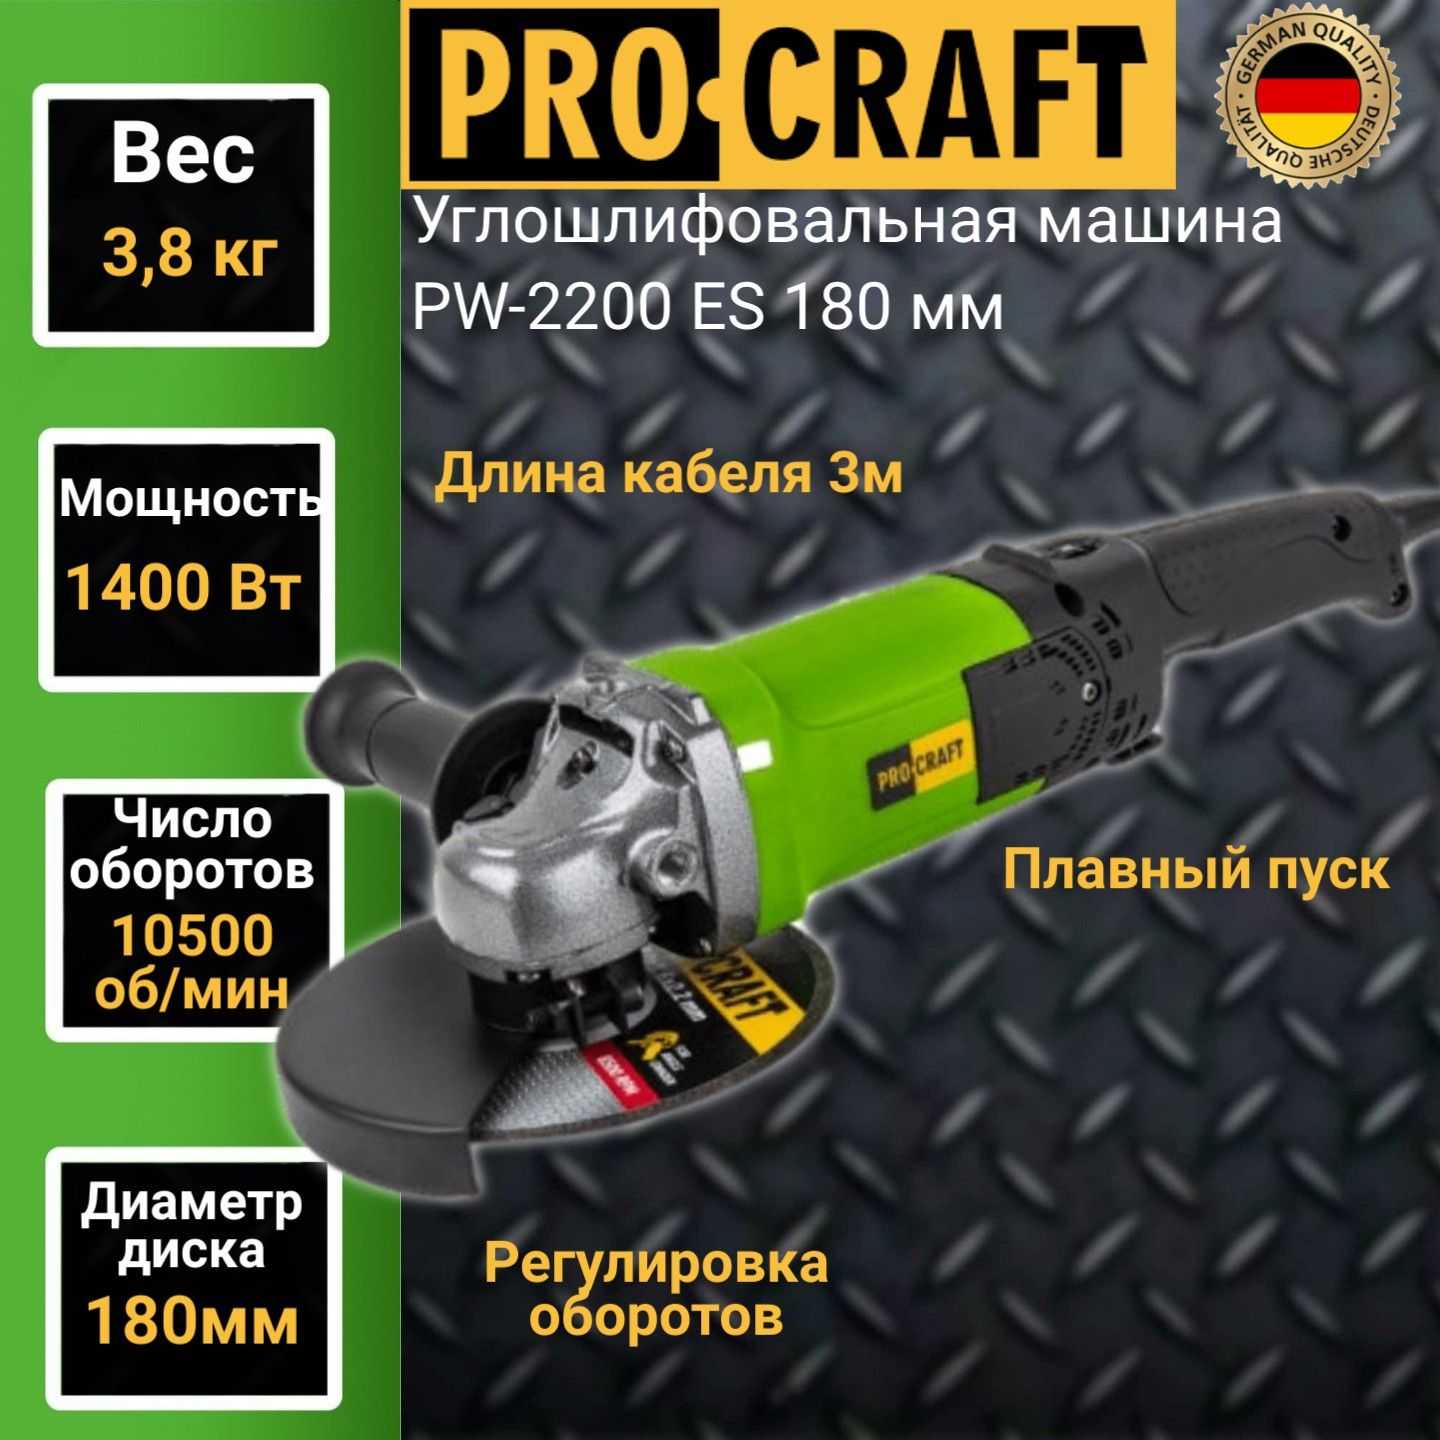 Углошлифовальная машина болгарка Procraft PW-2200ЕS, 180мм круг, 1400Вт, 10500об/мин болгарка ушм энергомаш